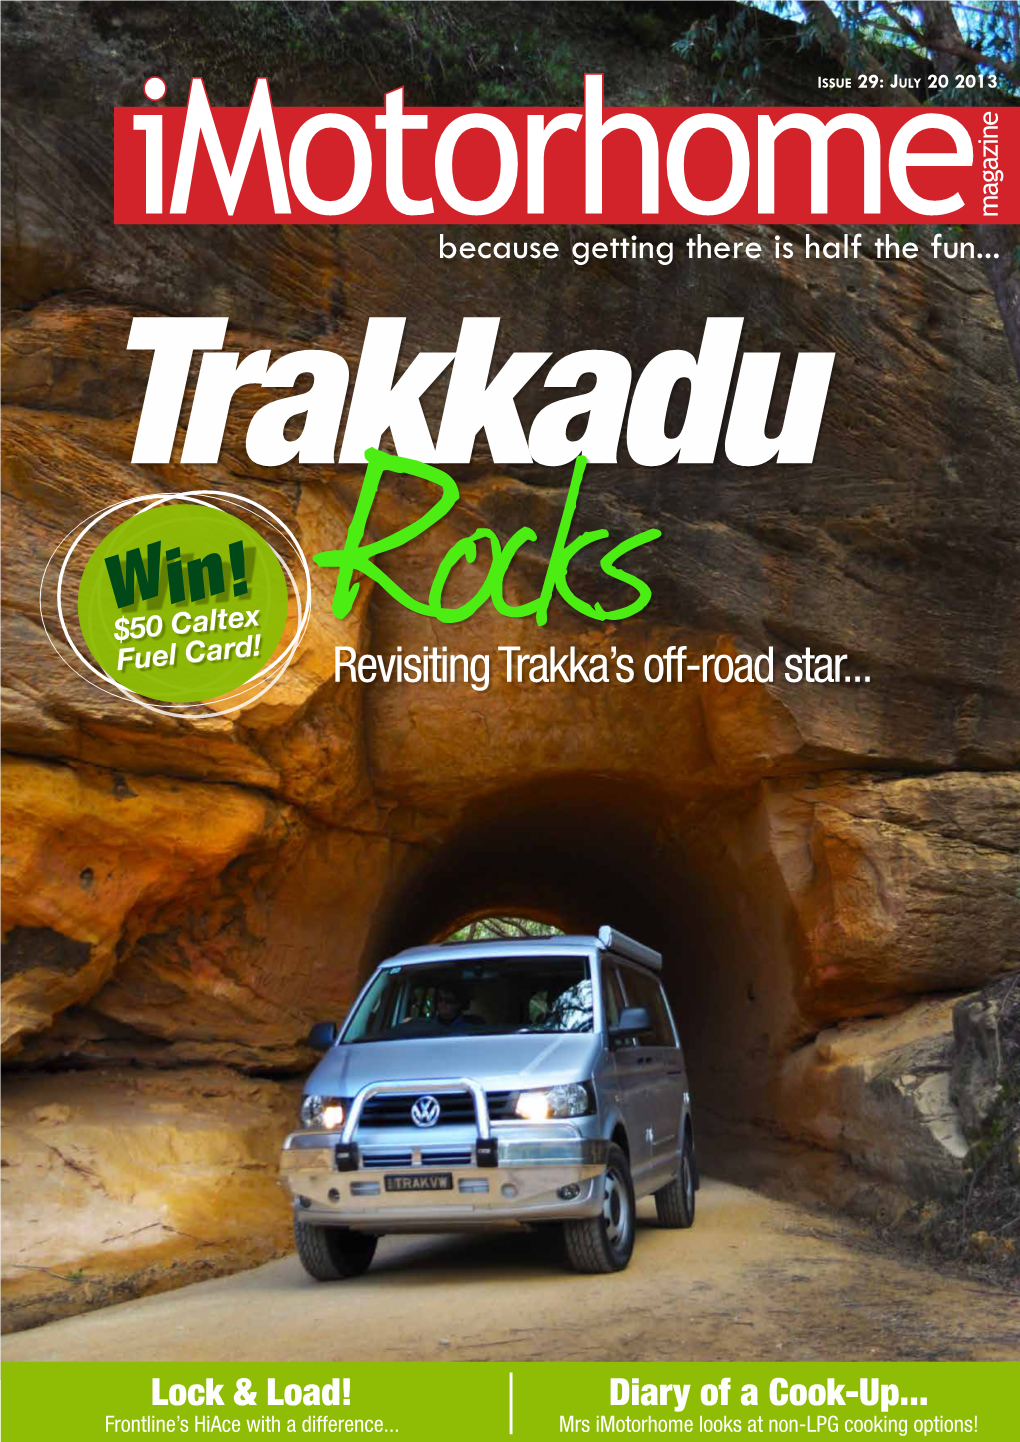 Revisiting Trakka's Off-Road Star